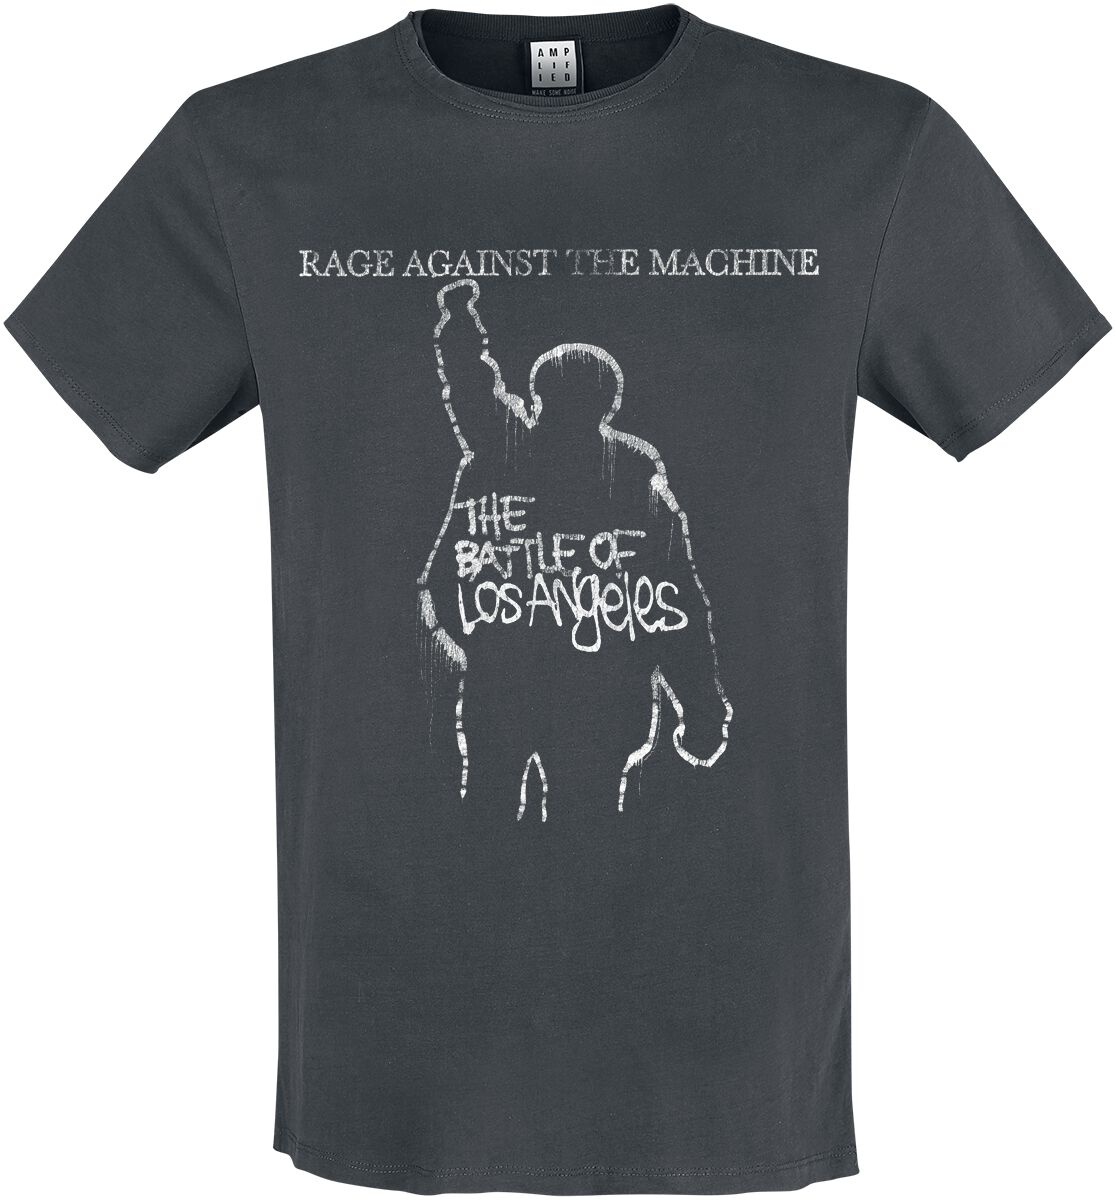 Rage Against The Machine T-Shirt - Amplified Collection - The Battle Of LA - S bis 3XL - für Männer - Größe XL - charcoal  - EMP exklusives